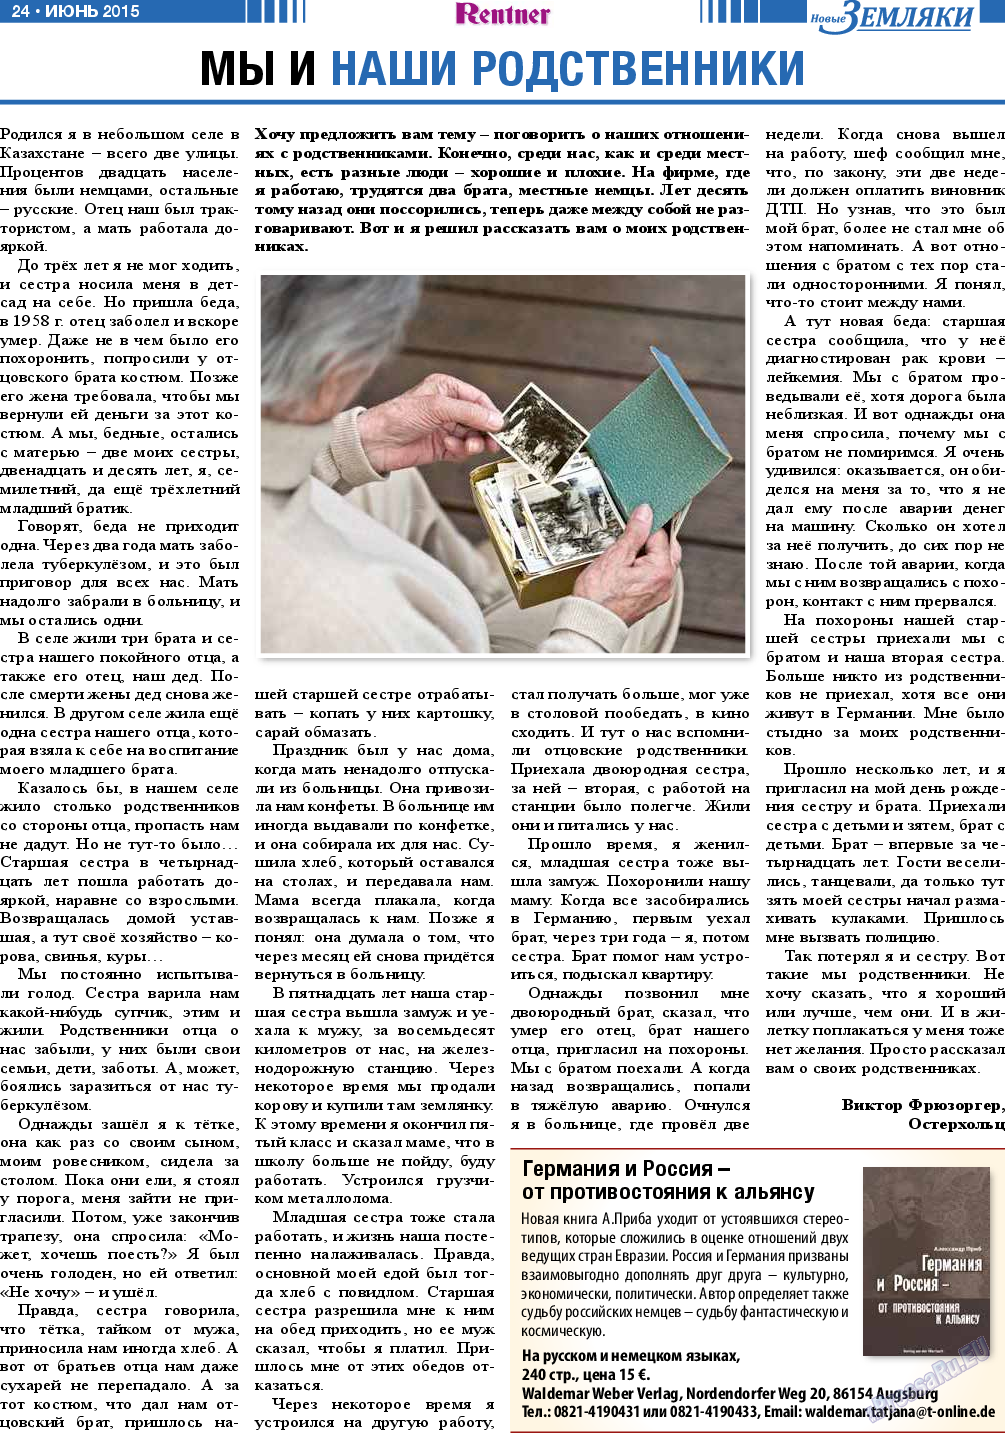 Новые Земляки (газета). 2015 год, номер 6, стр. 24